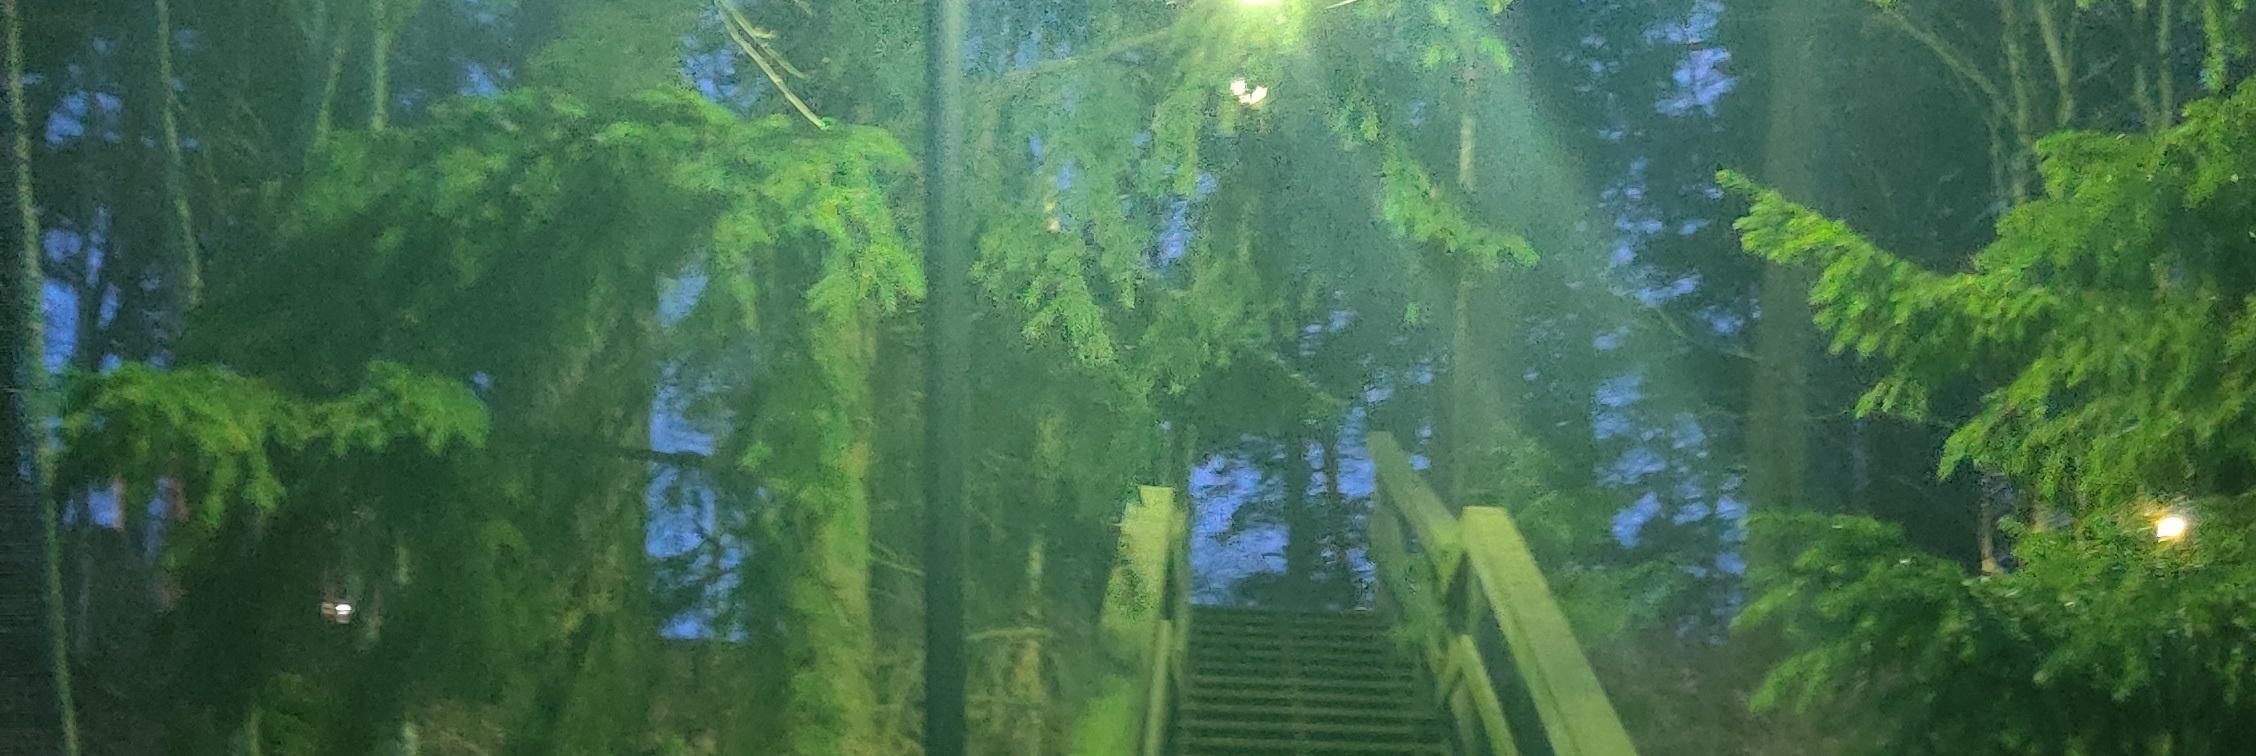 Sammaloitunut portaikko himmeässä vihertävässä iltavalaistuksessa Lapinjärven siviilipalveluskeskuksen lähistöllä.